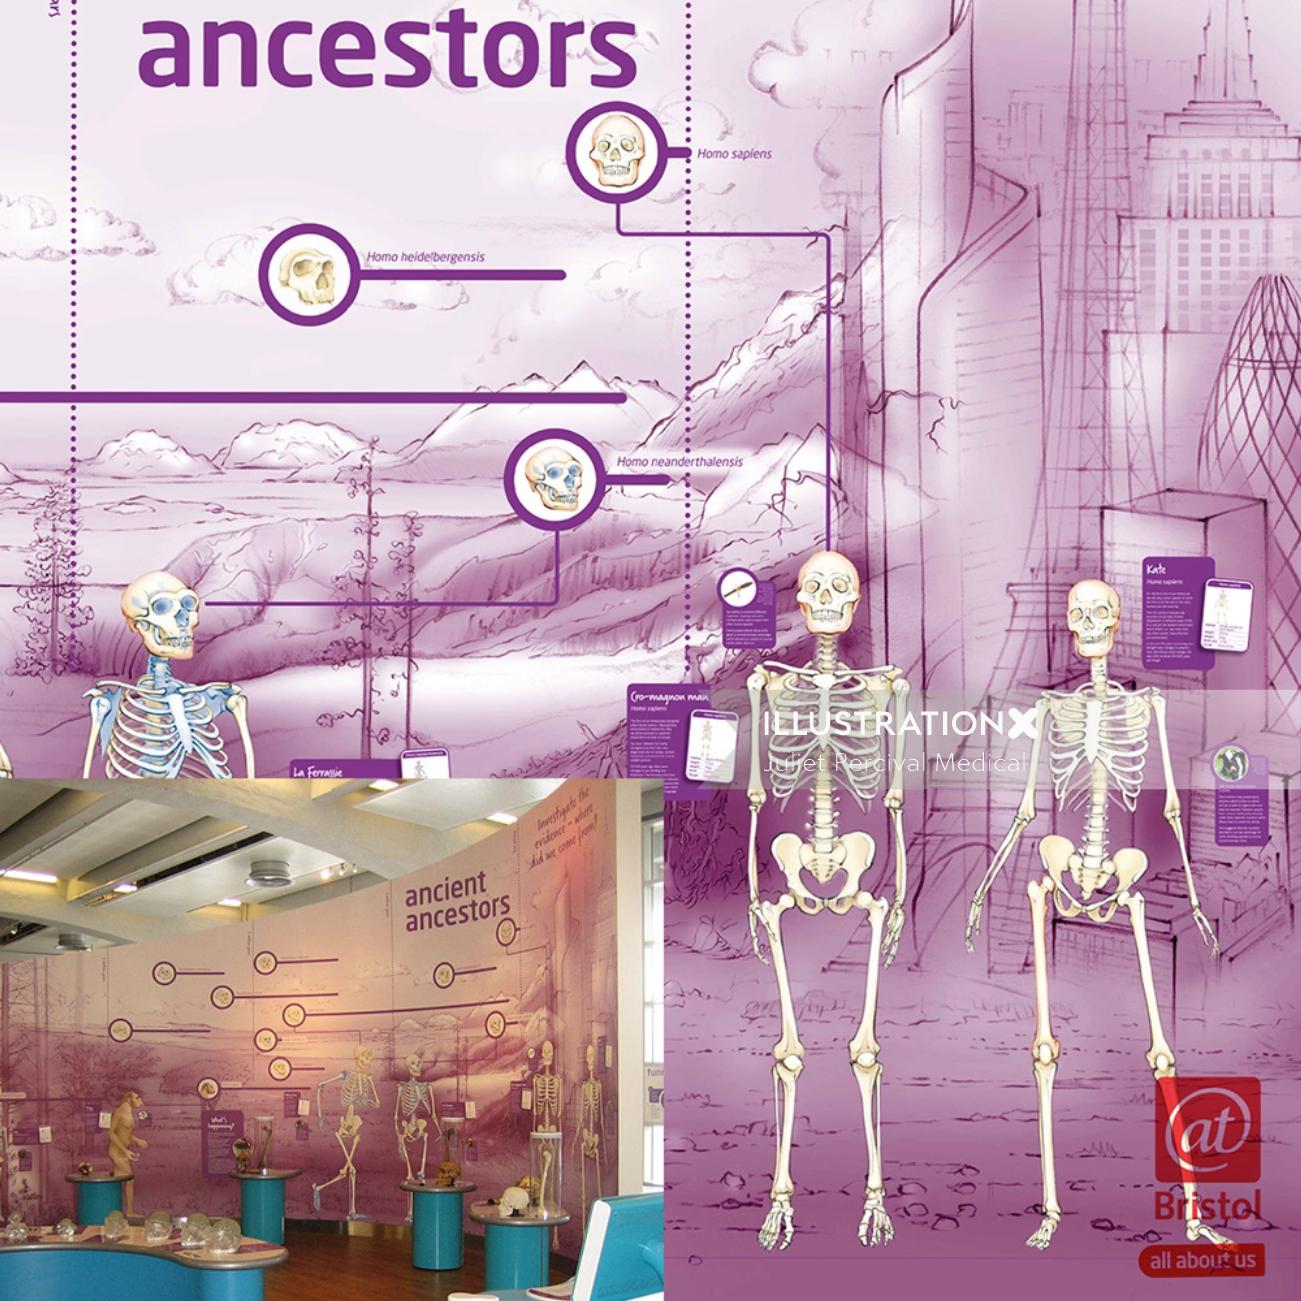 évolution, squelettes, hominidés, ancêtres, homus erectus, singes